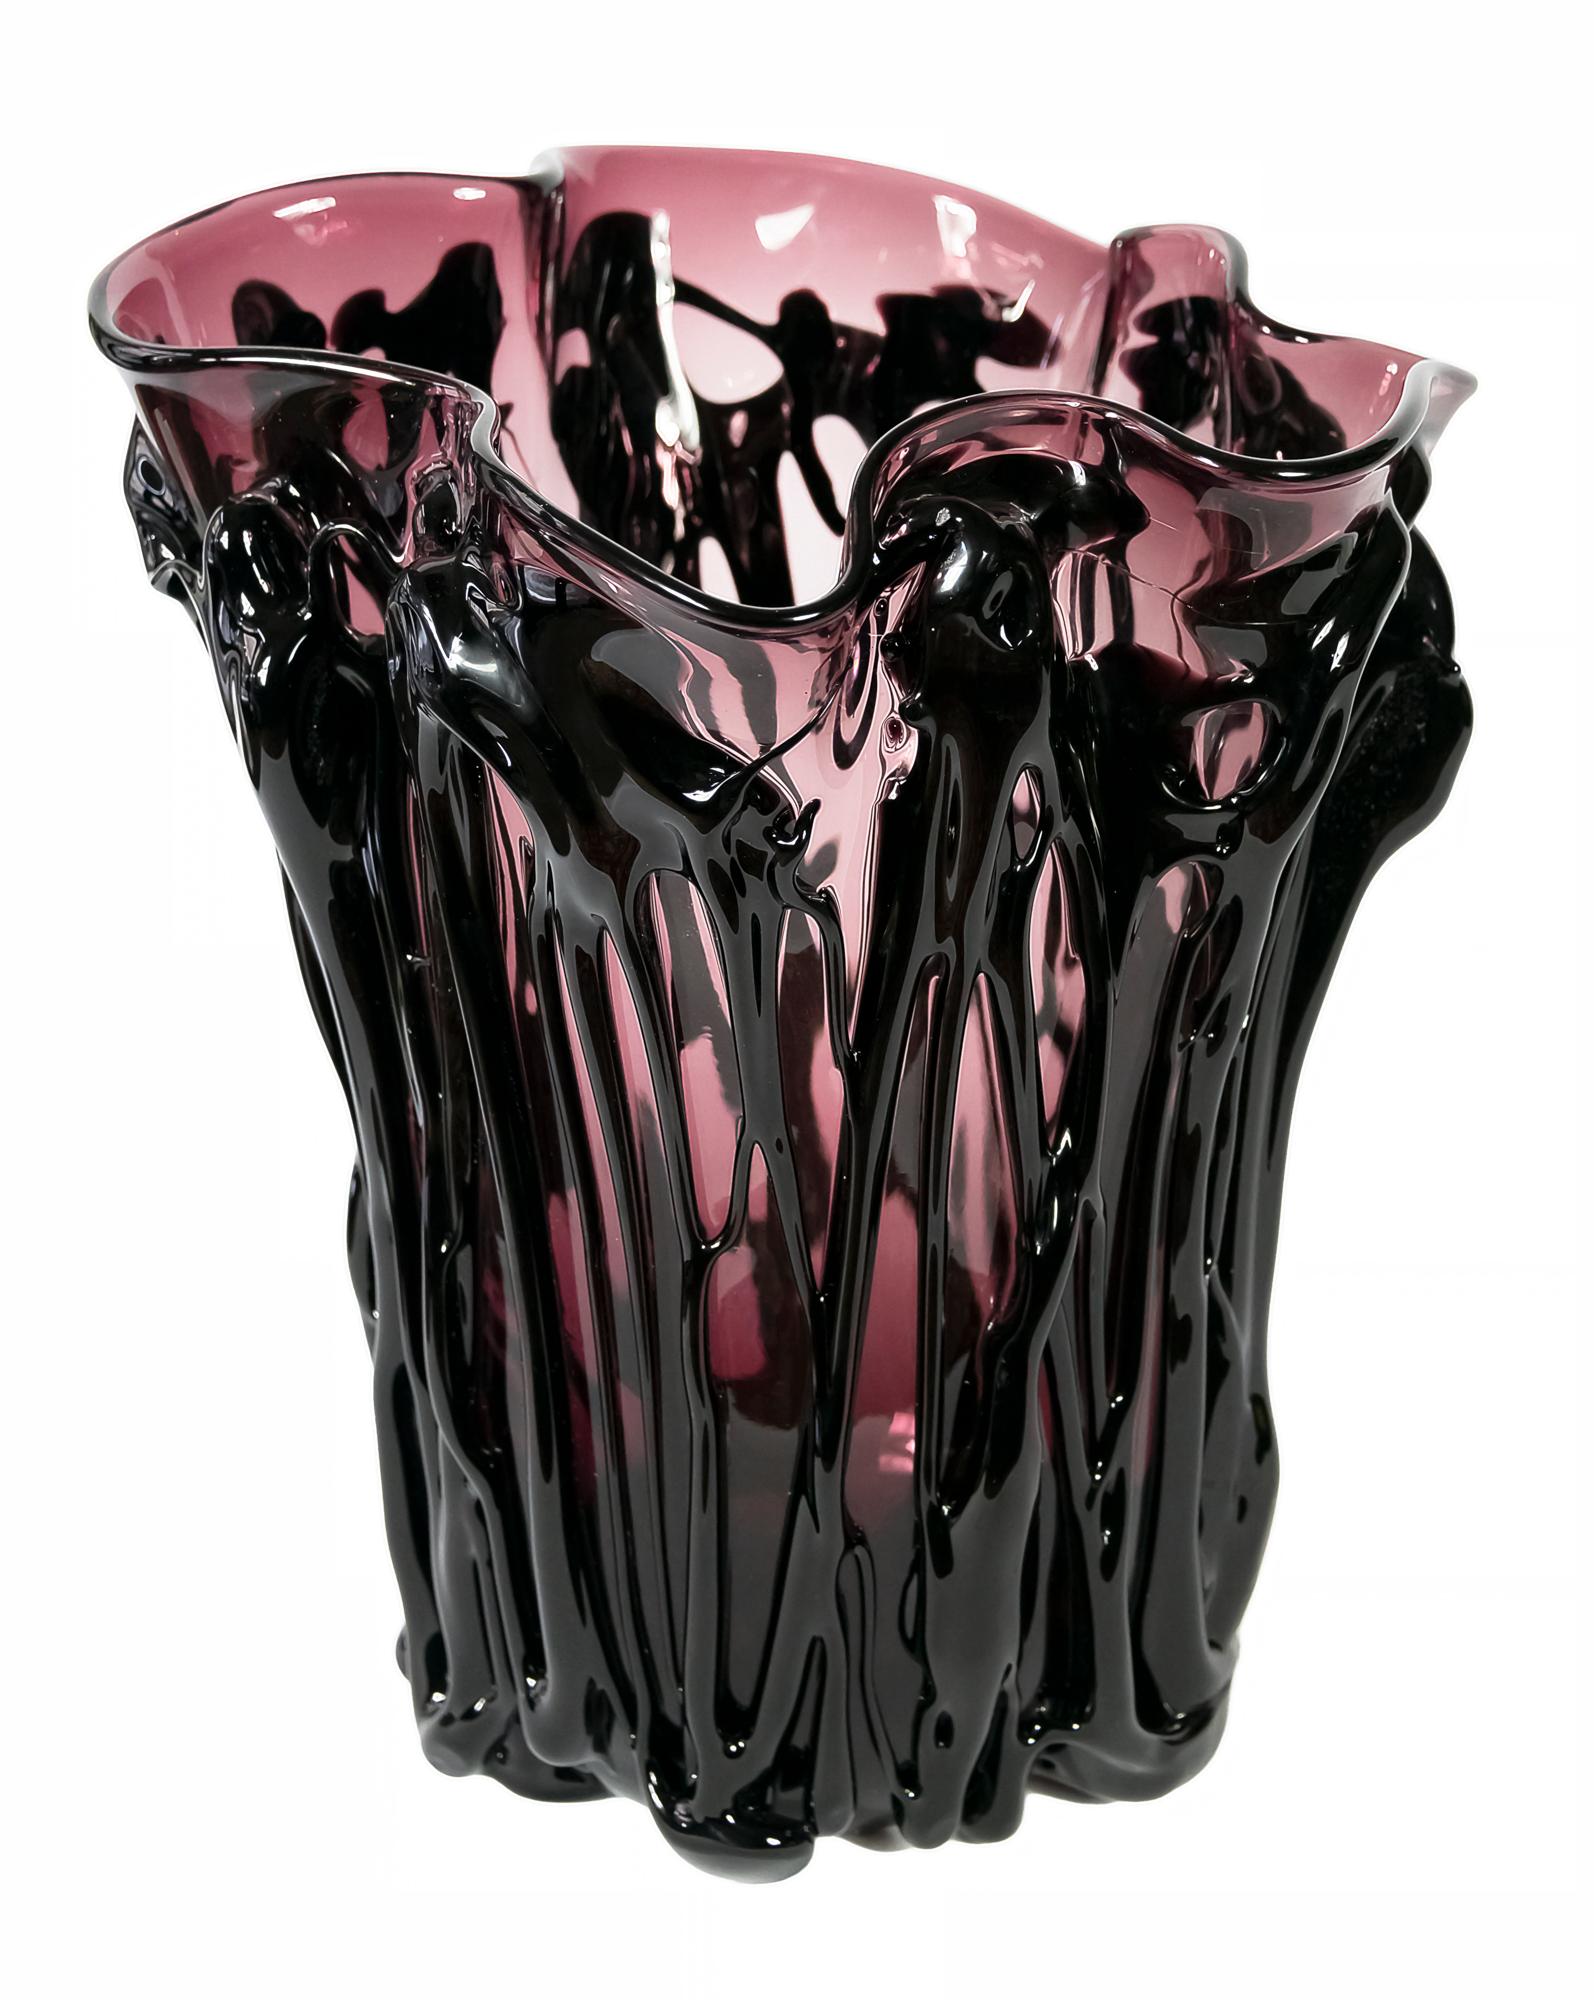 Große Vase aus italienischem Murano-Glas, handgefertigt von E. Camozzo, in asymmetrischer Form in zwei Farben - lila und schwarz.
Die Vase ist sehr schwer und massiv.
Das Gewicht beträgt 10,8 kg.
Signiert auf dem Sockel E. Camozzo.
 